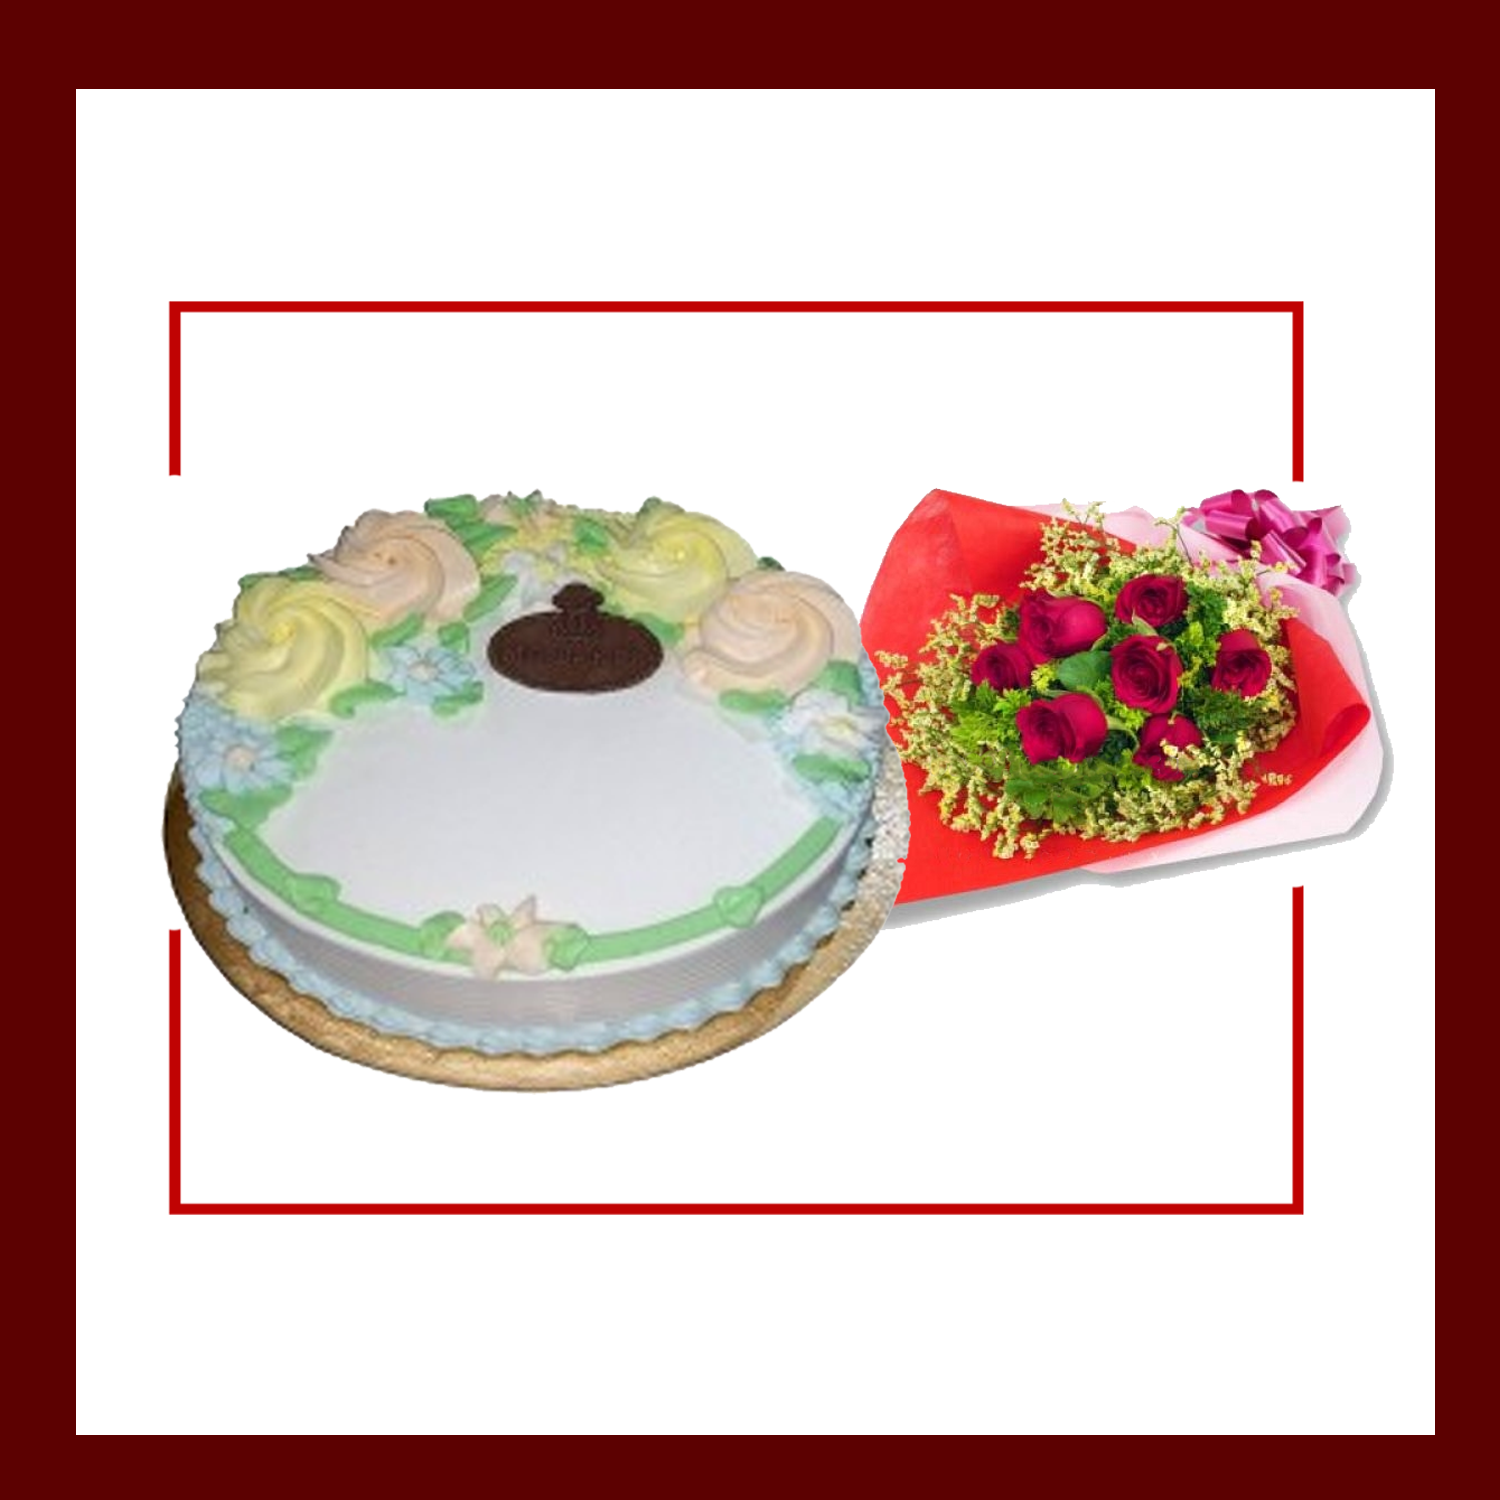 Cake & Flower Combo 1